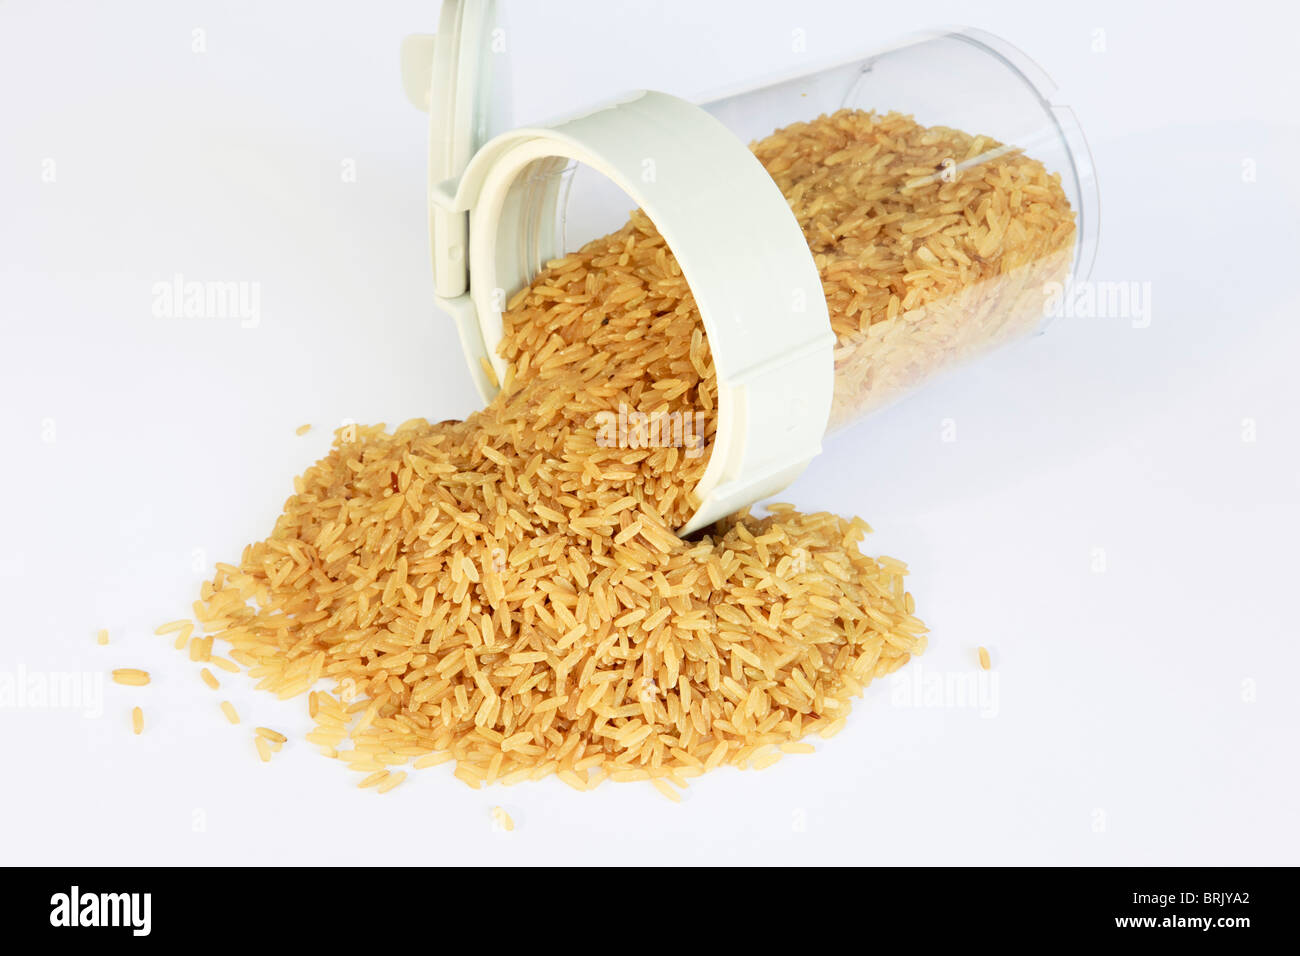 Haufen von rohem brauner Reis aus einem Lebensmittel-Behälter mit Deckel öffnen Sie auf einem weißen Tisch Stockfoto